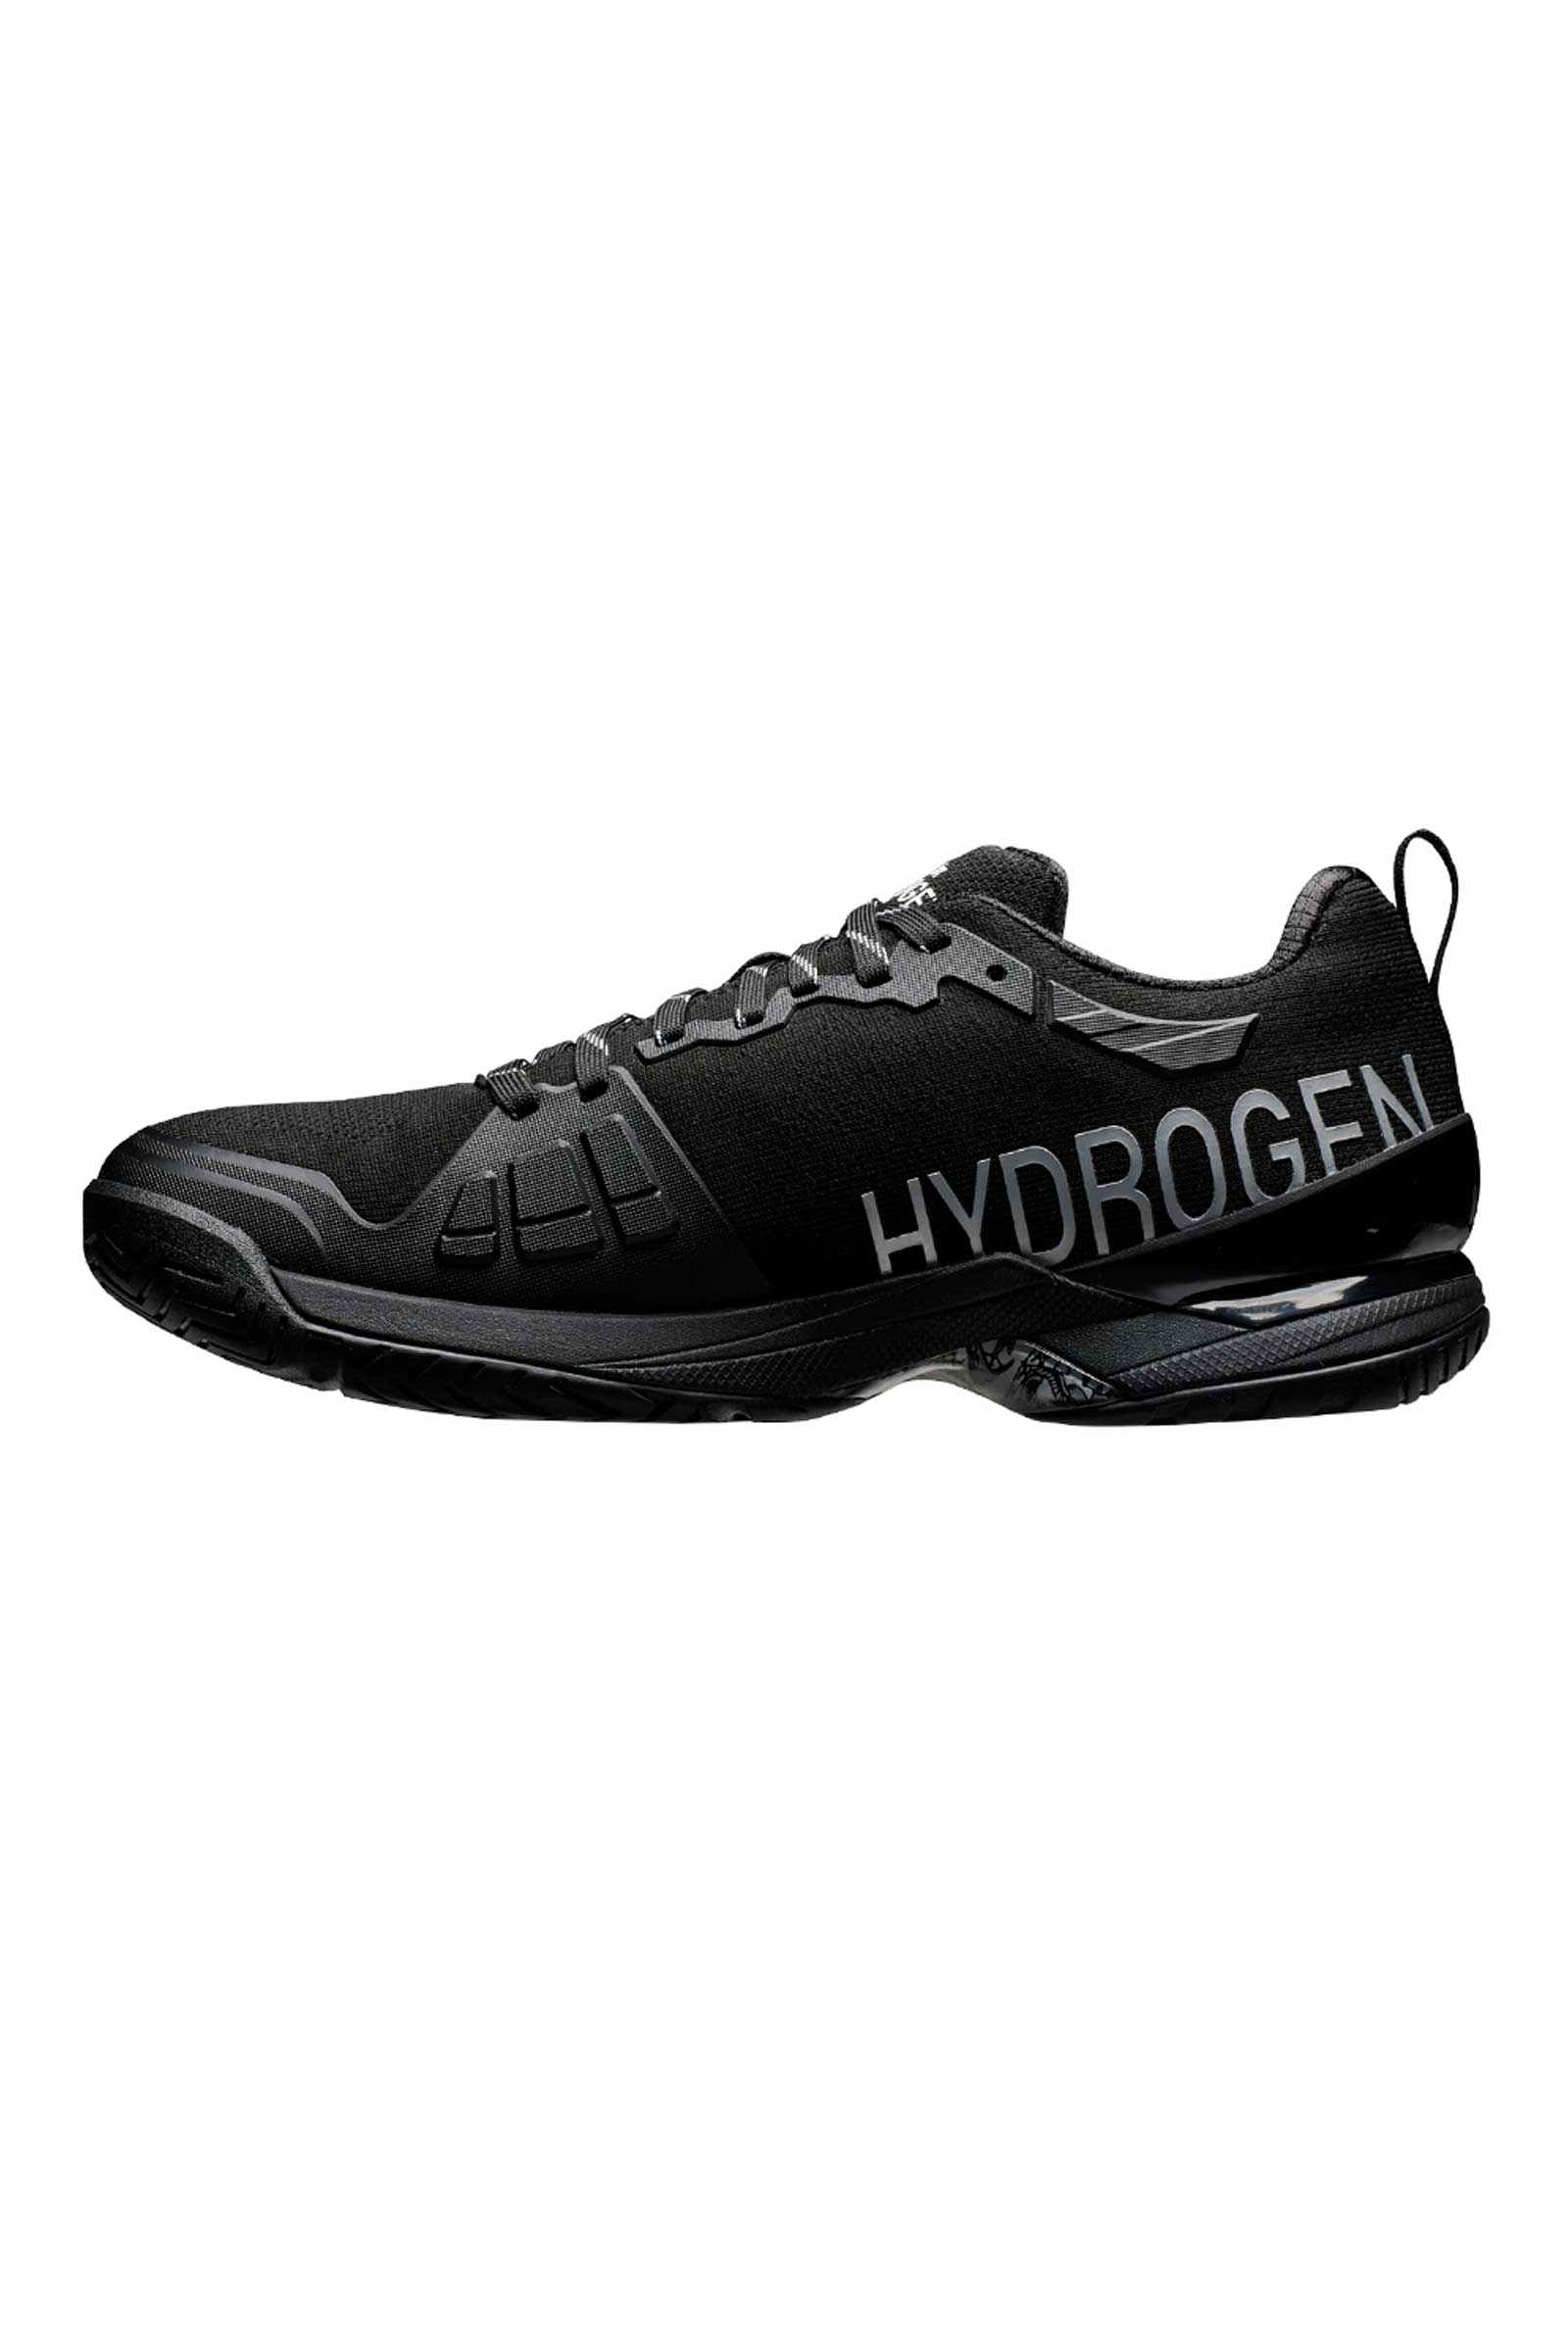 TENNIS SHOES PRINCE BY HYDROGEN - BLACK - Hydrogen - Luxury Sportwear